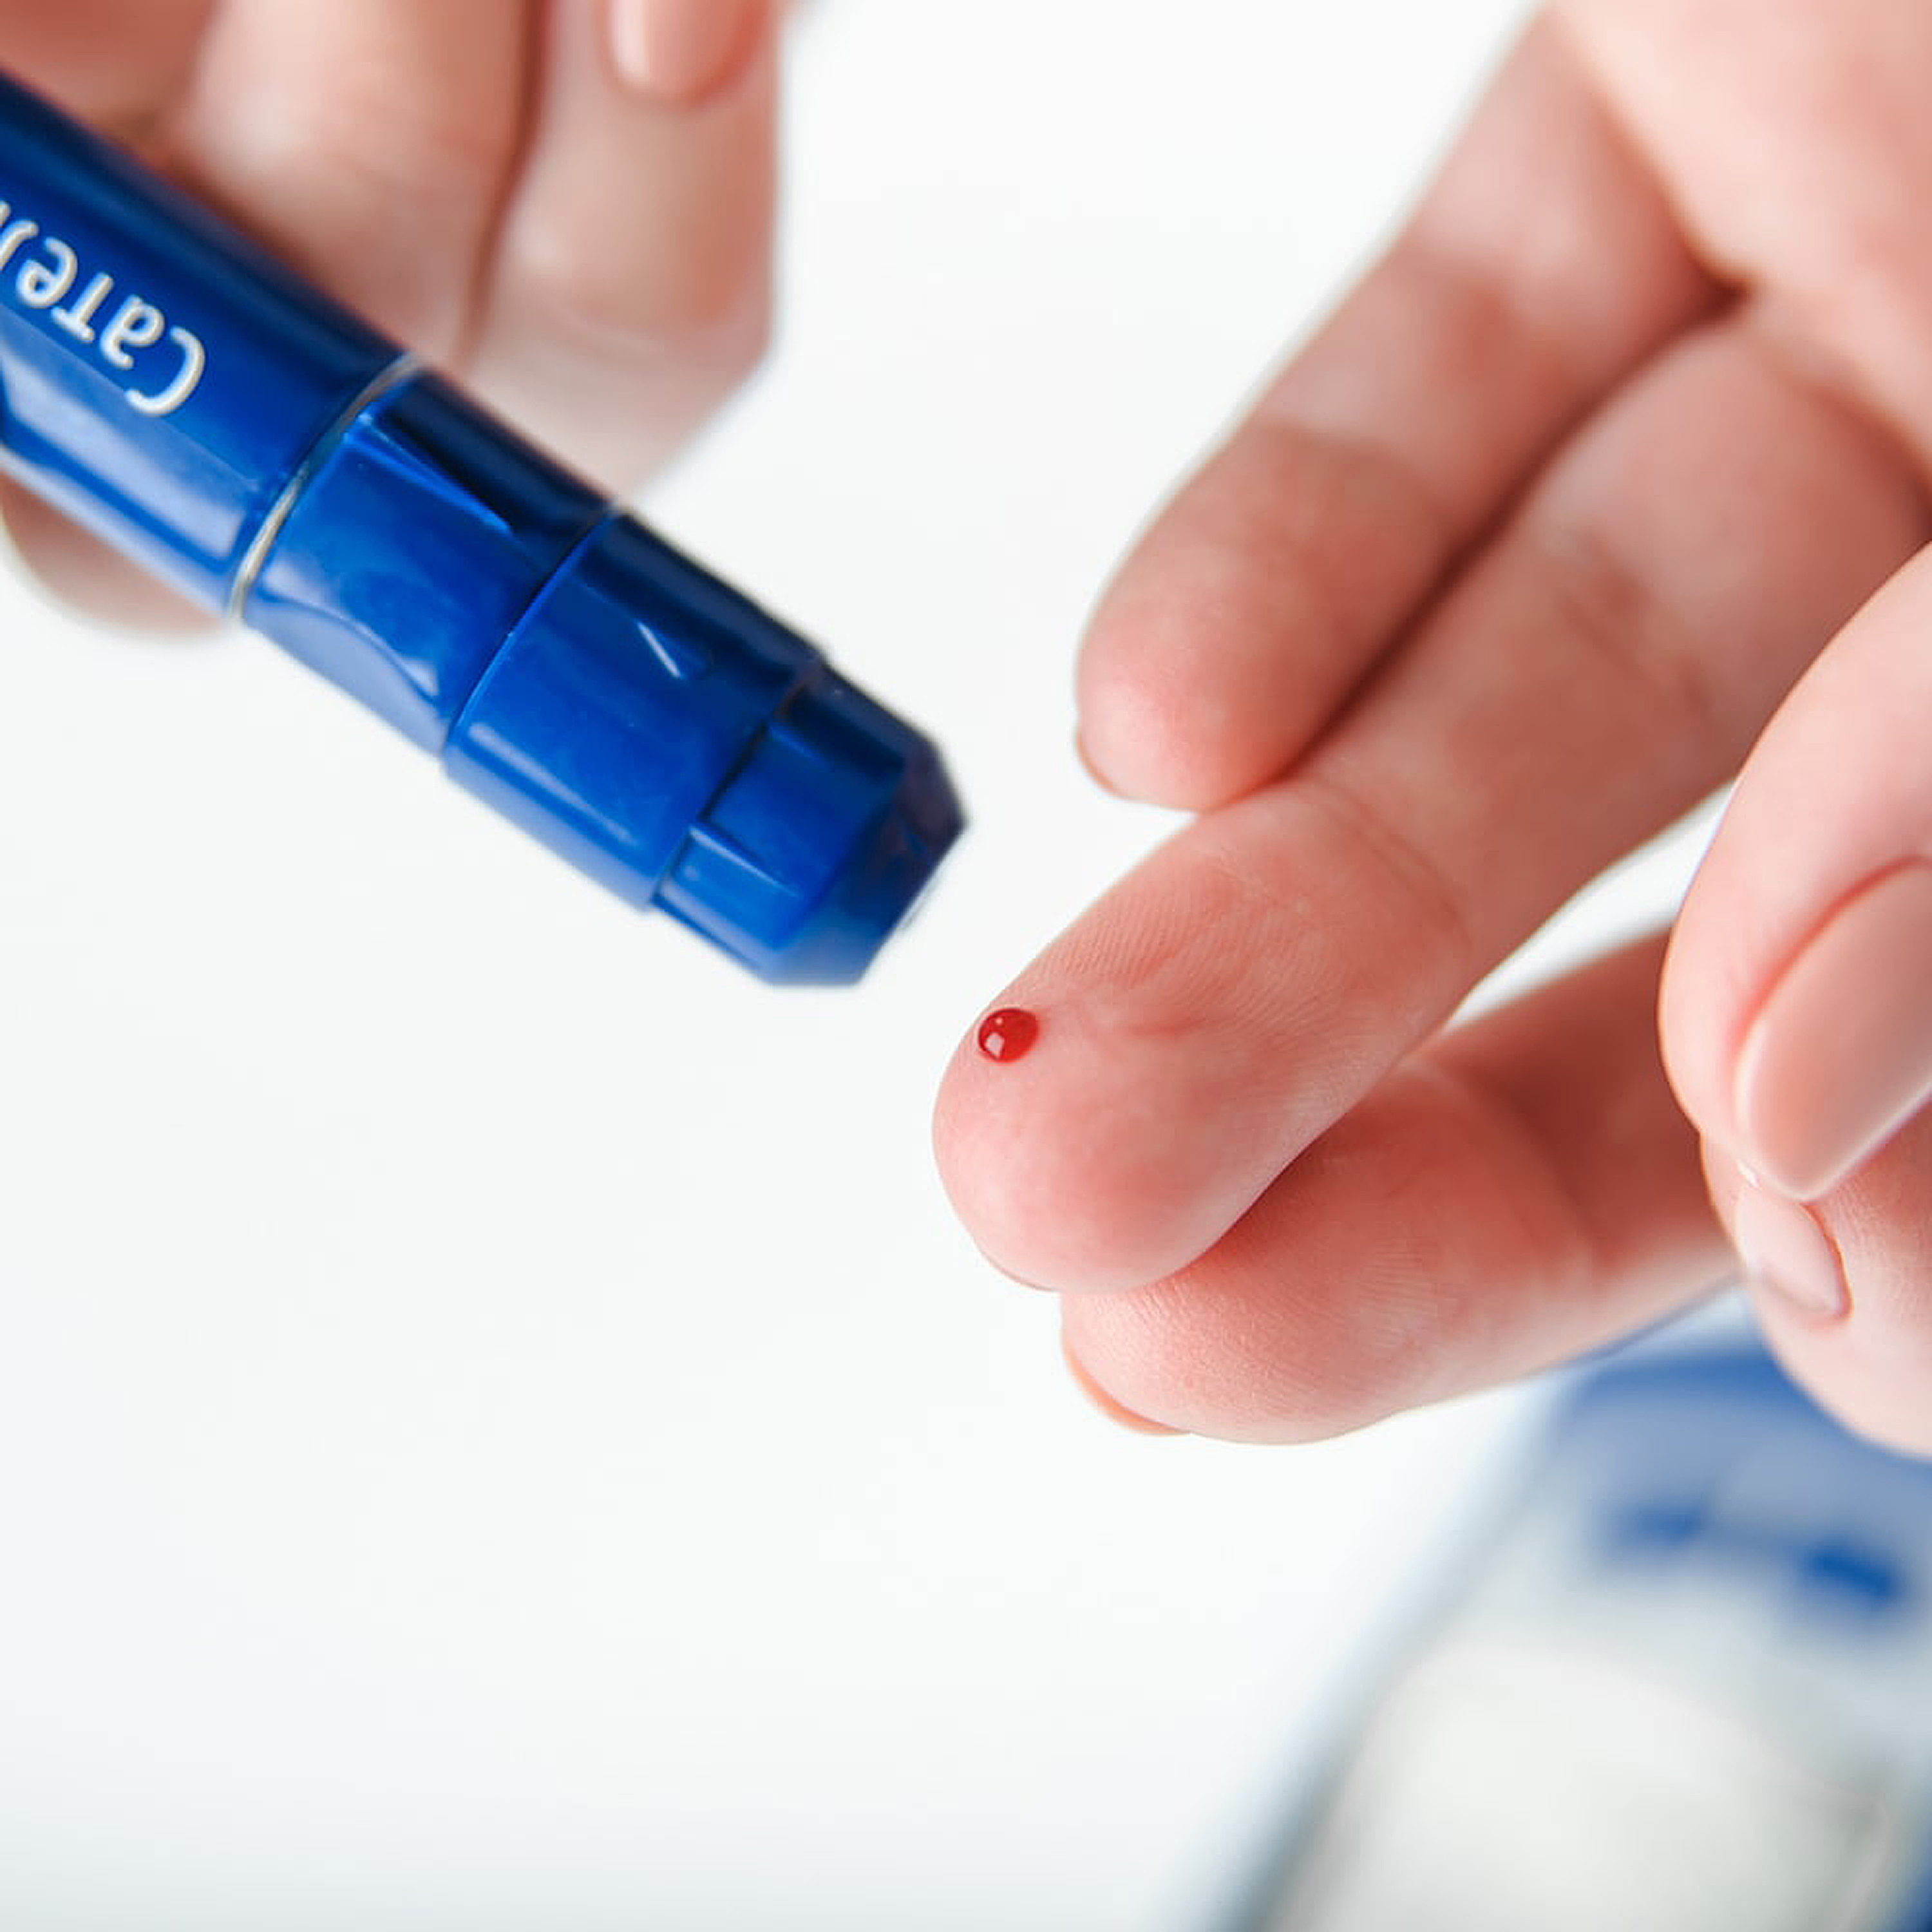 Measuring blood glucose correctly